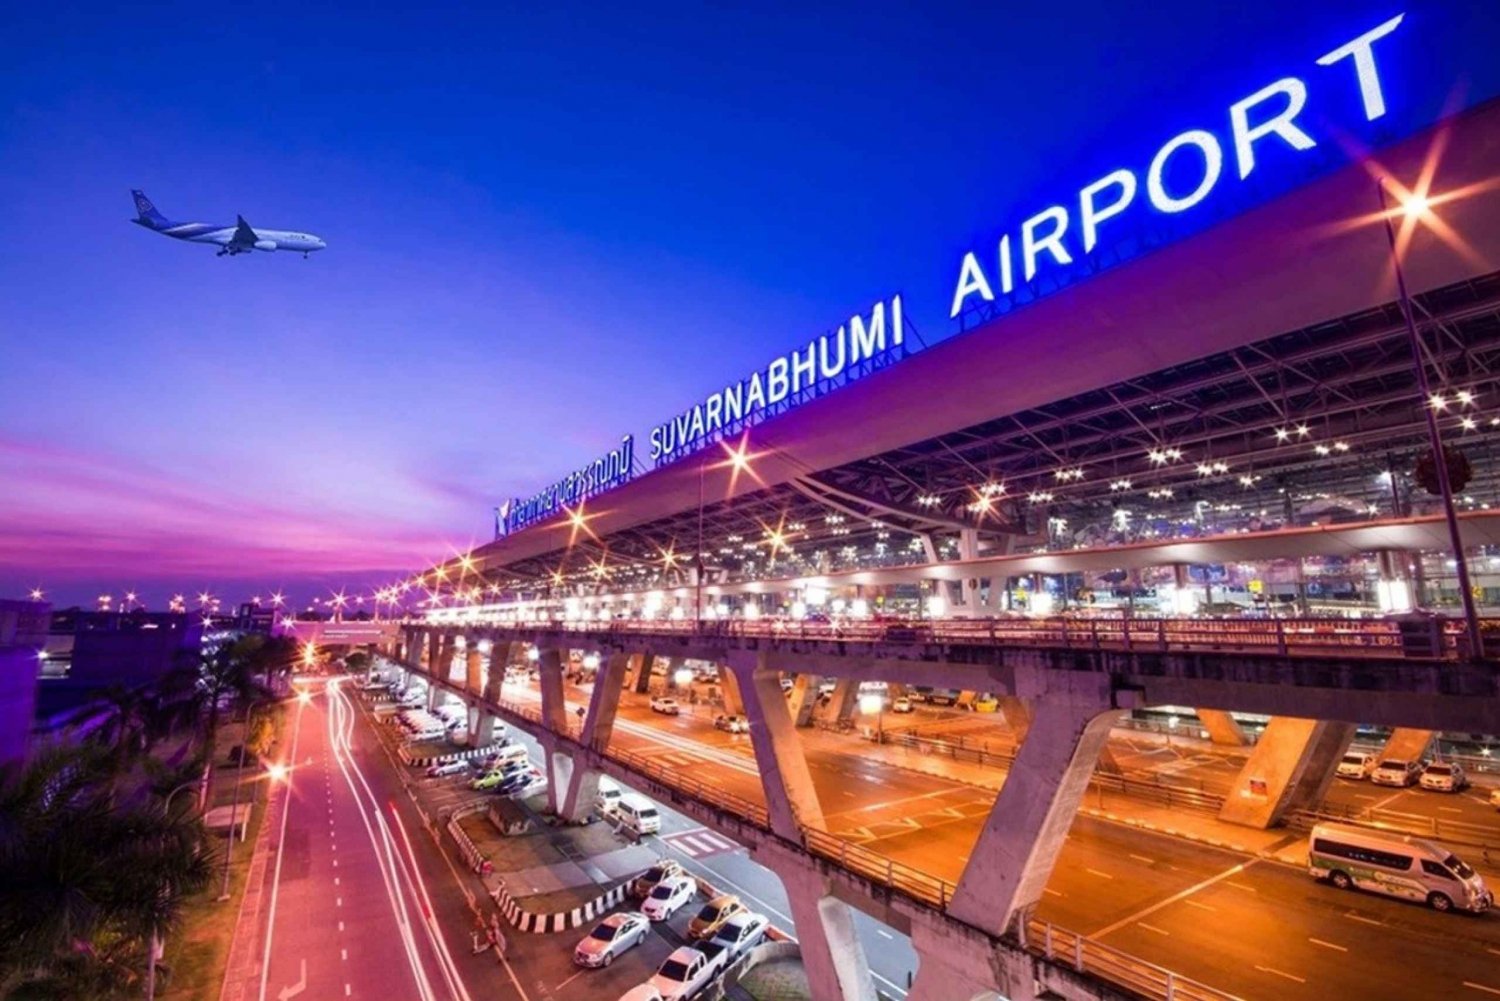 Lotnisko BKK||DMK : Transfer prywatnym samochodem do centrum Bangkoku